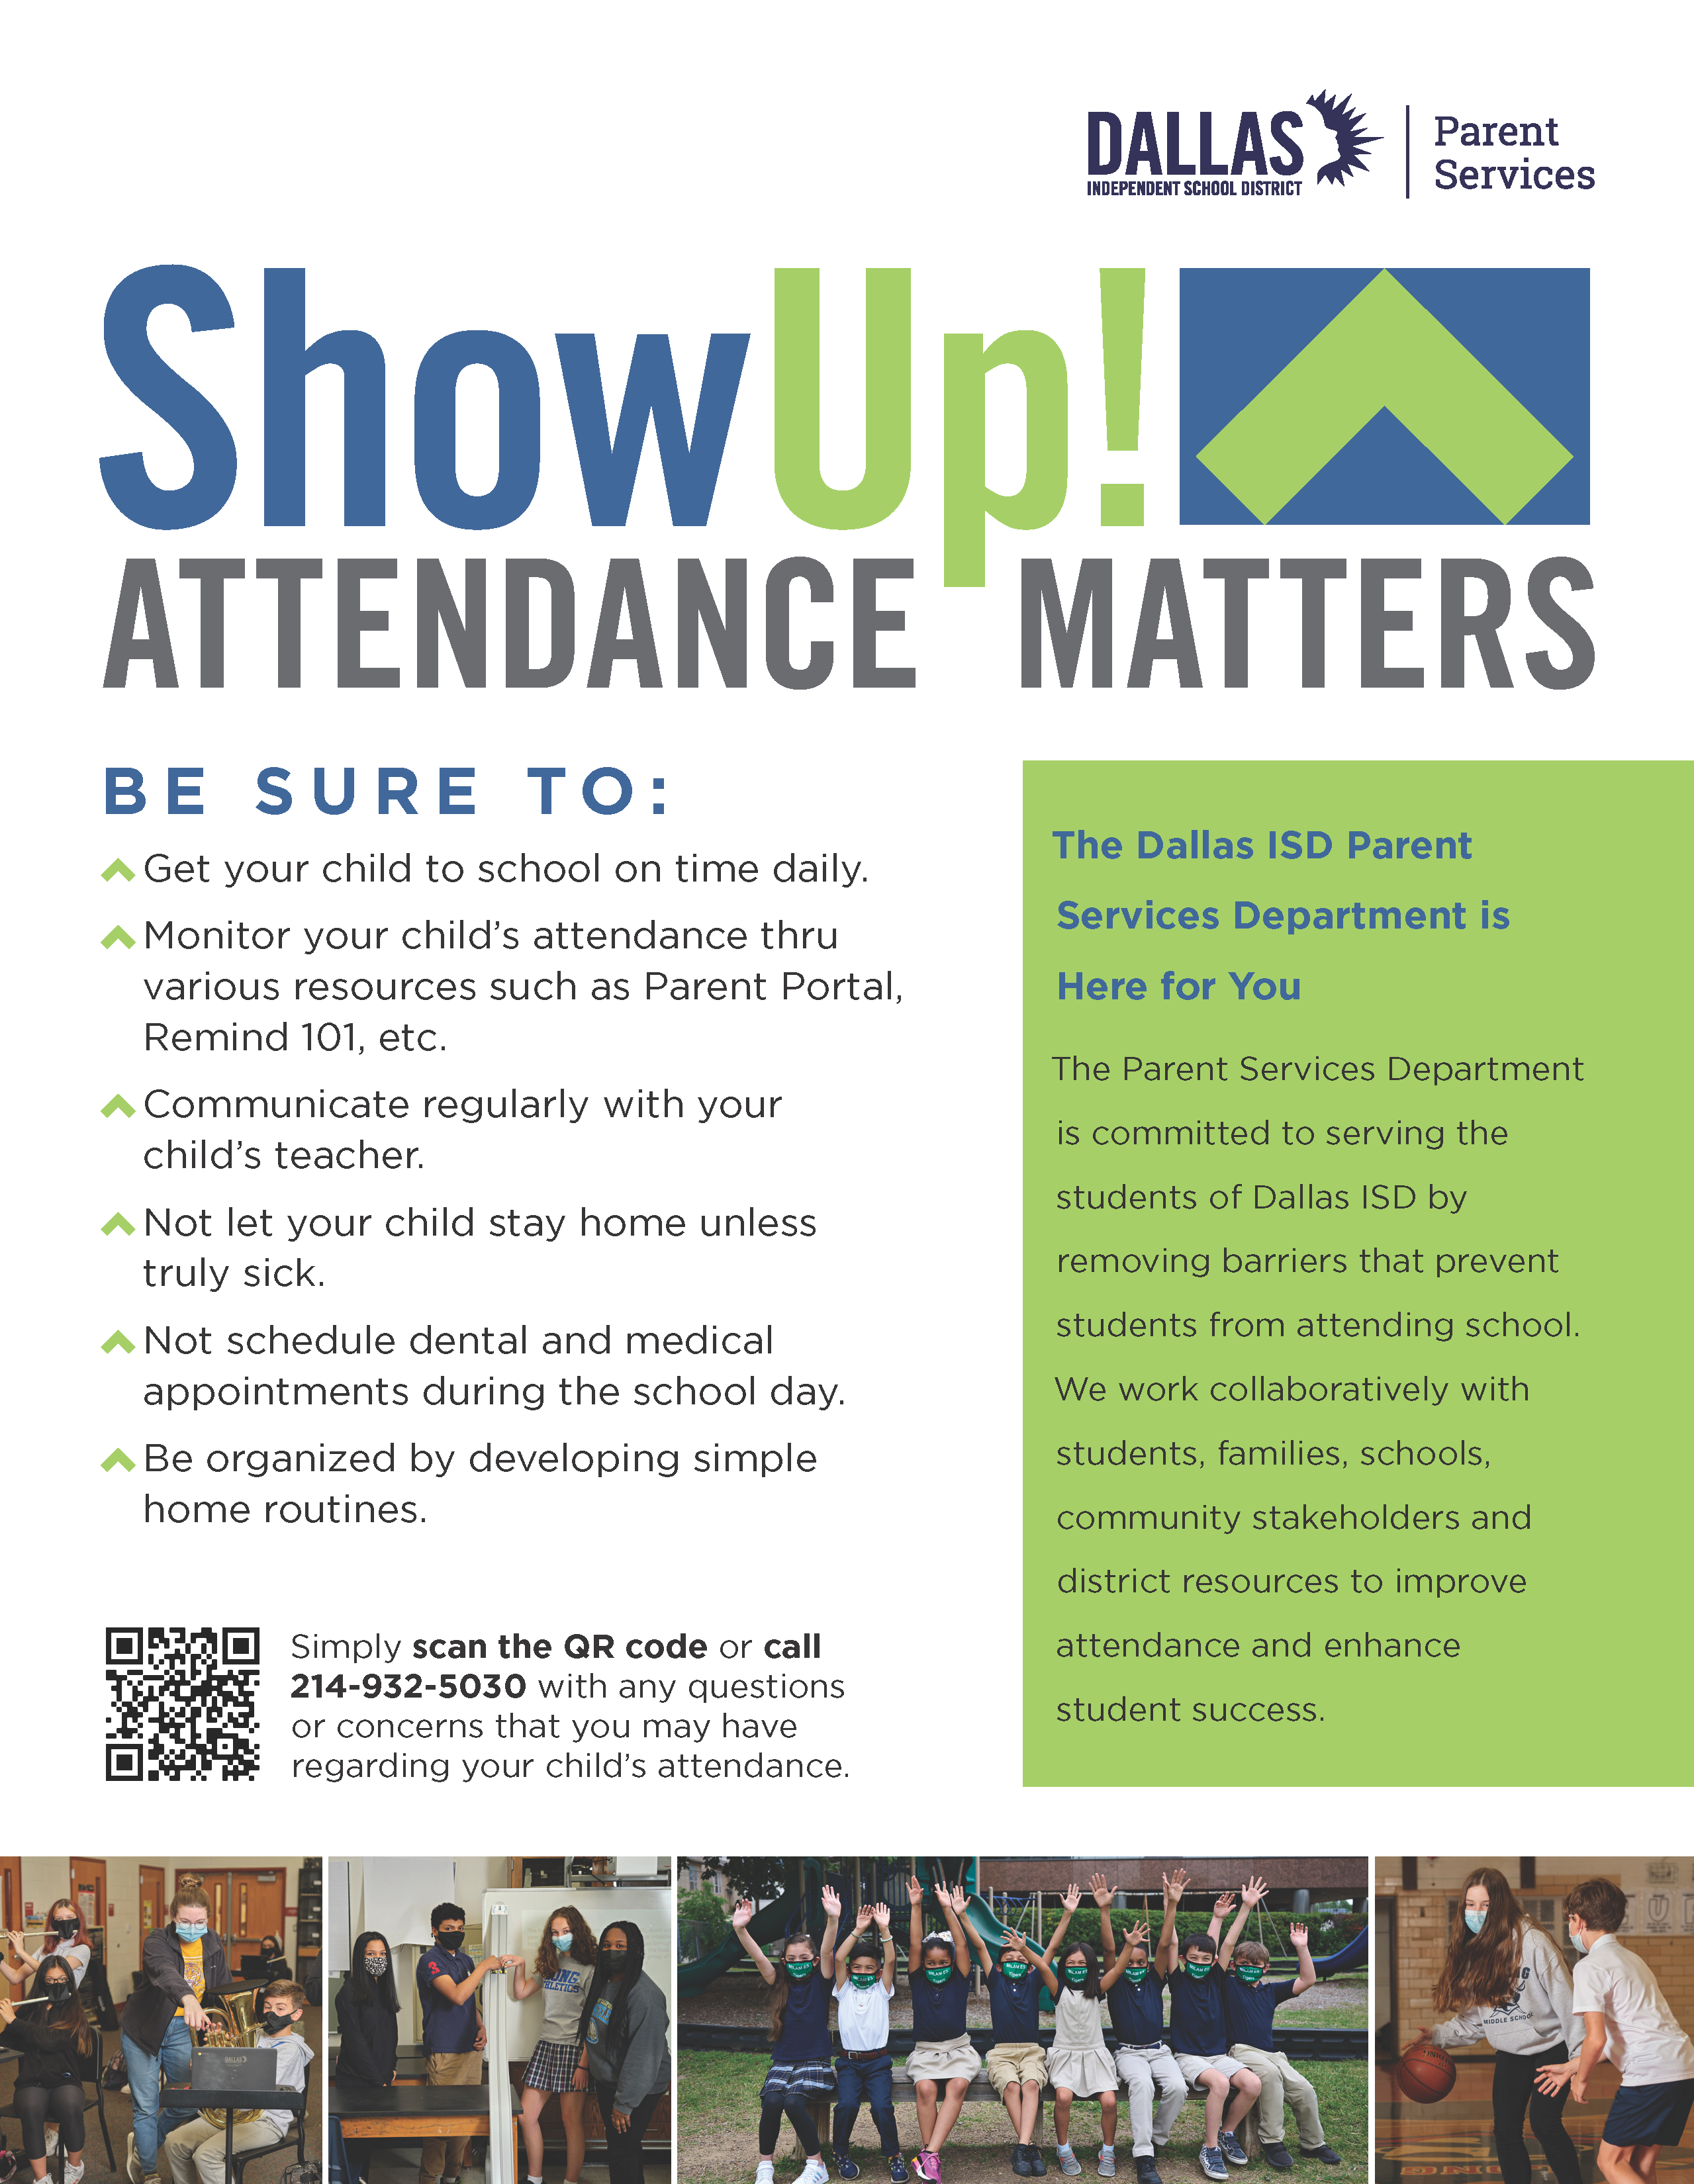 Show Up! Attendance Matters